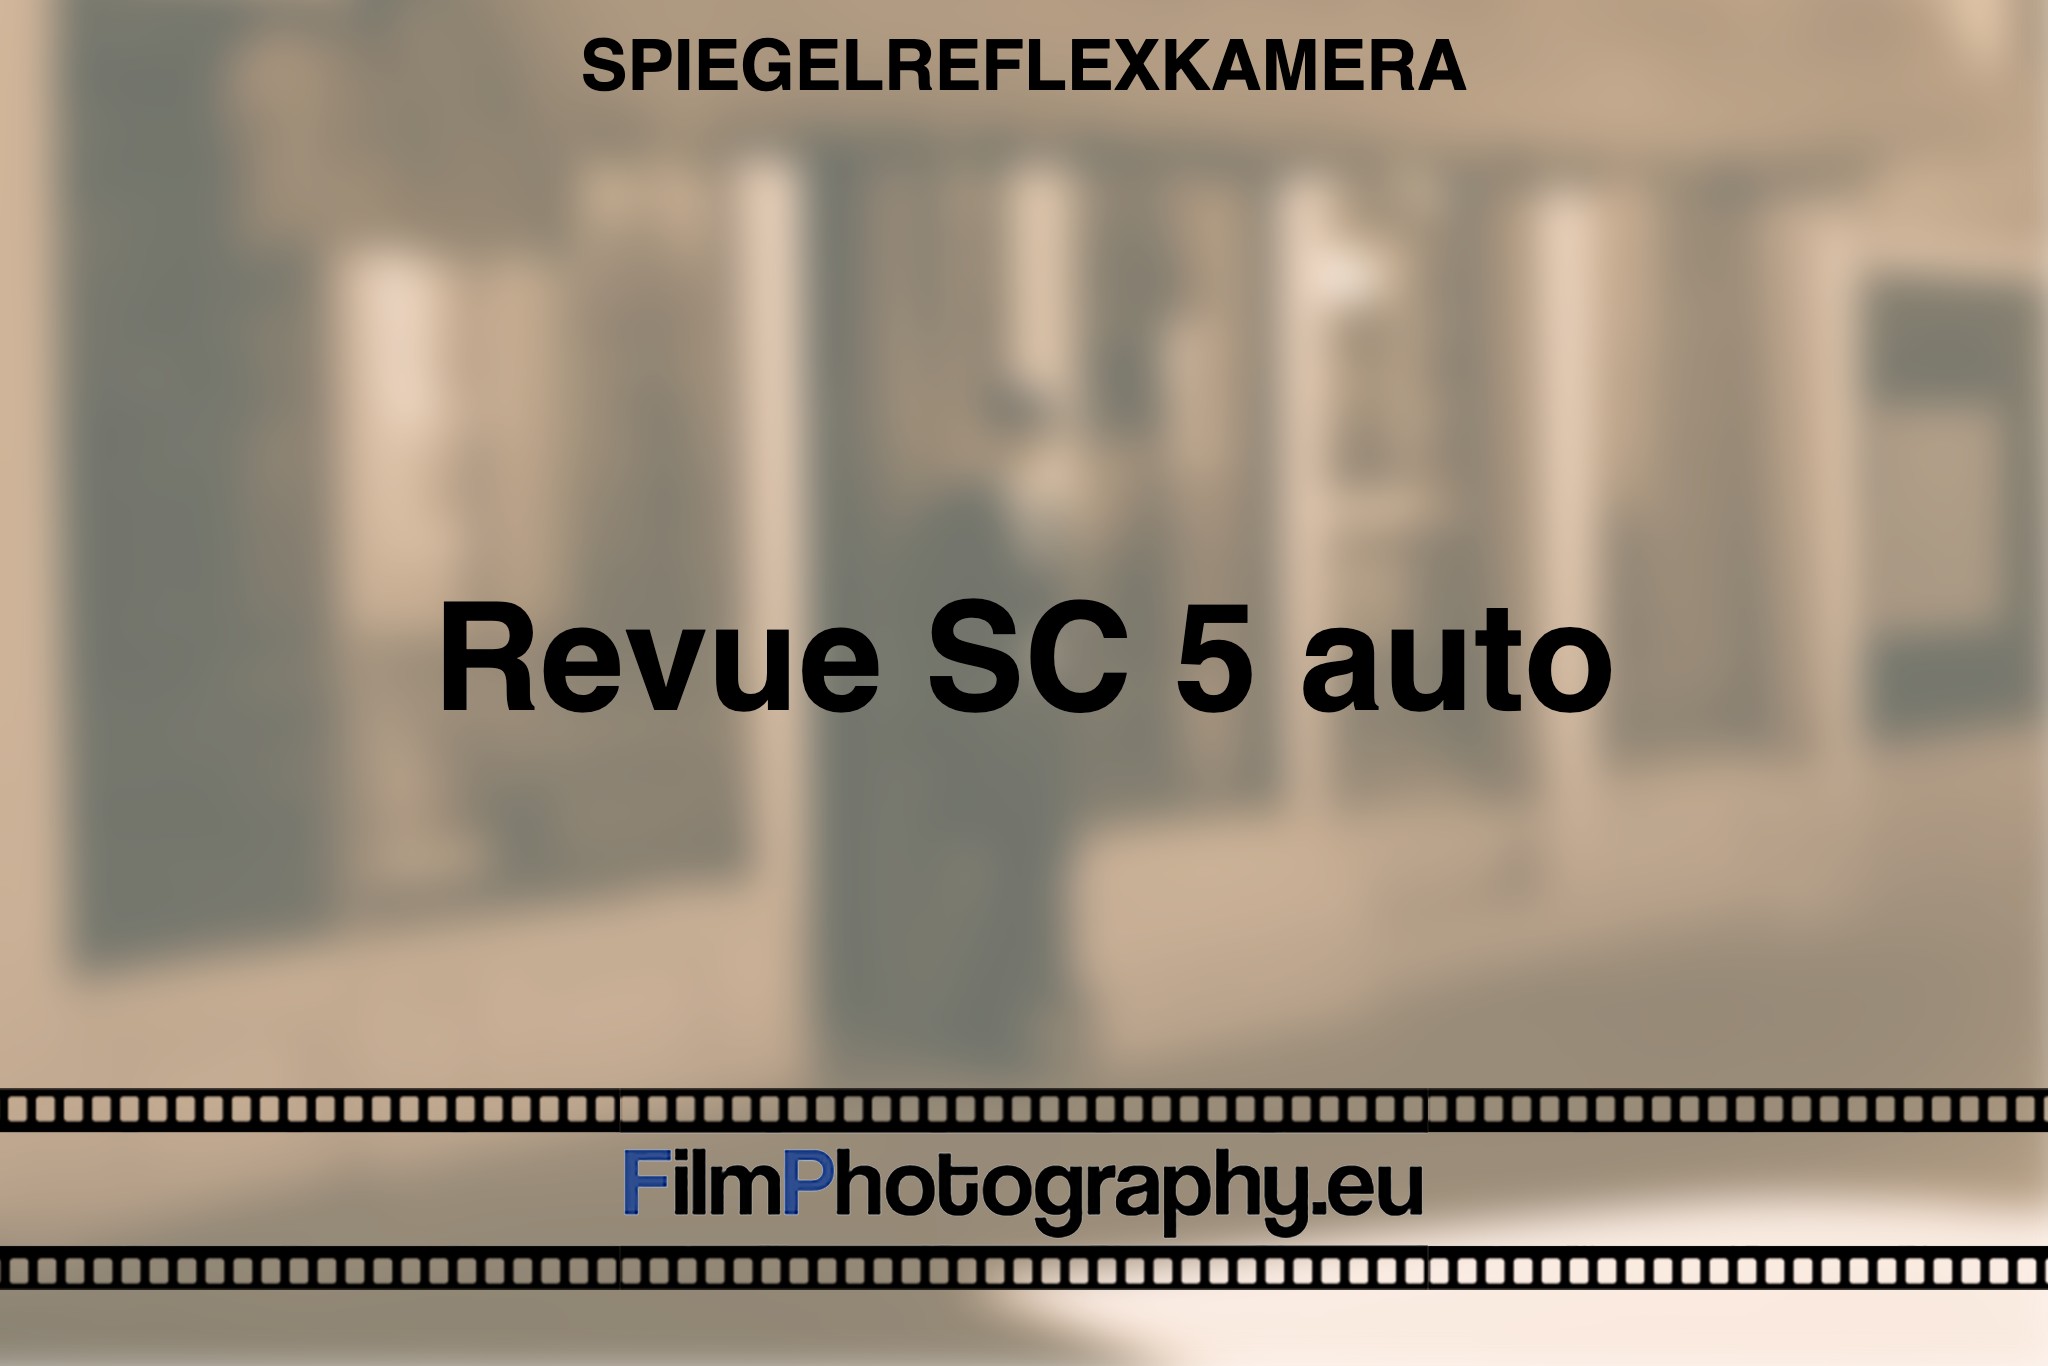 revue-sc-5-auto-spiegelreflexkamera-bnv